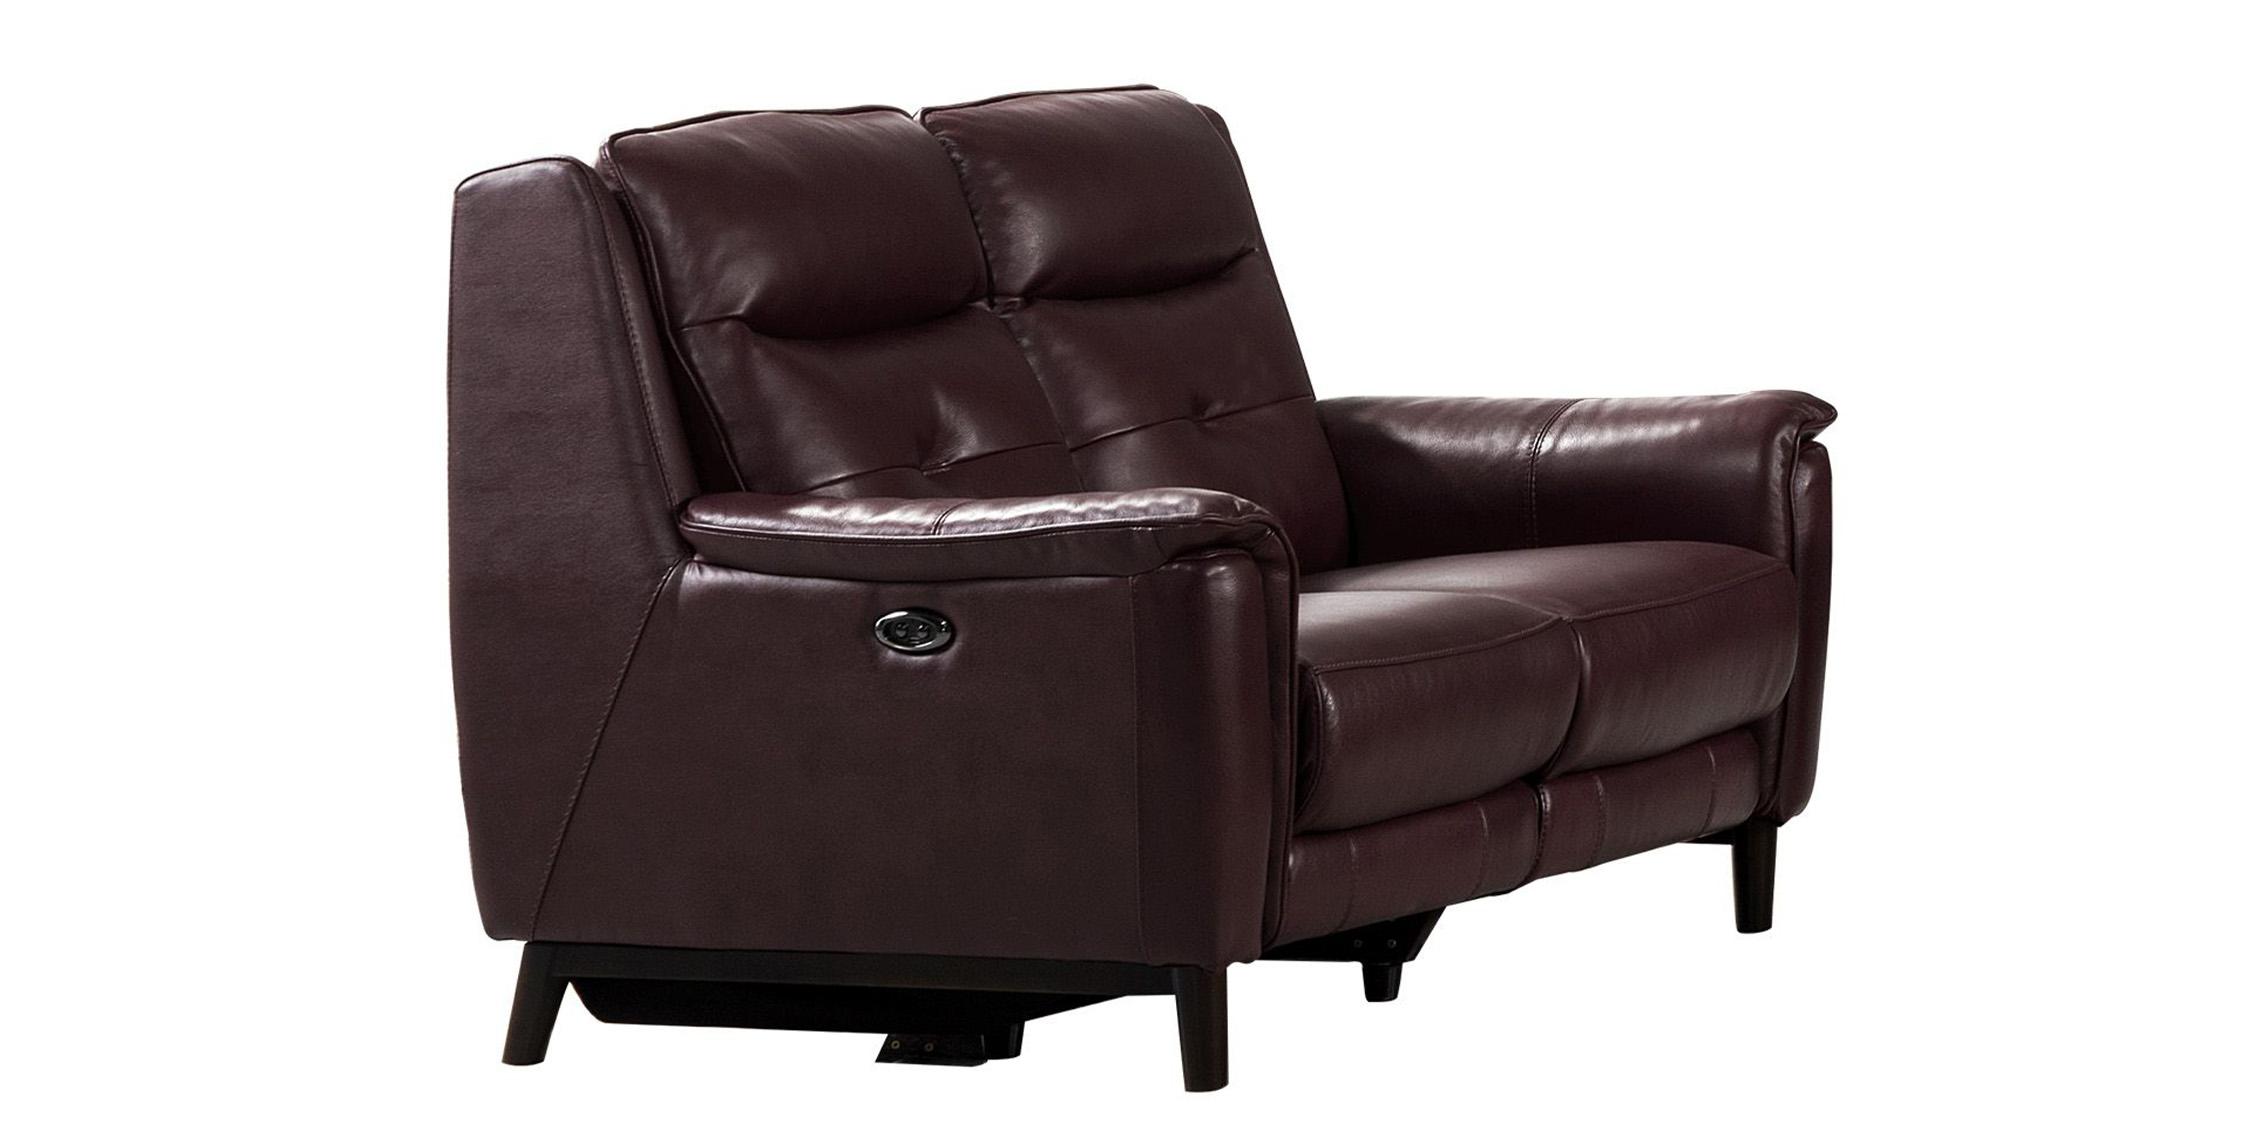 American Eagle Furniture EK-H237-DR-LS Recliner Loveseat